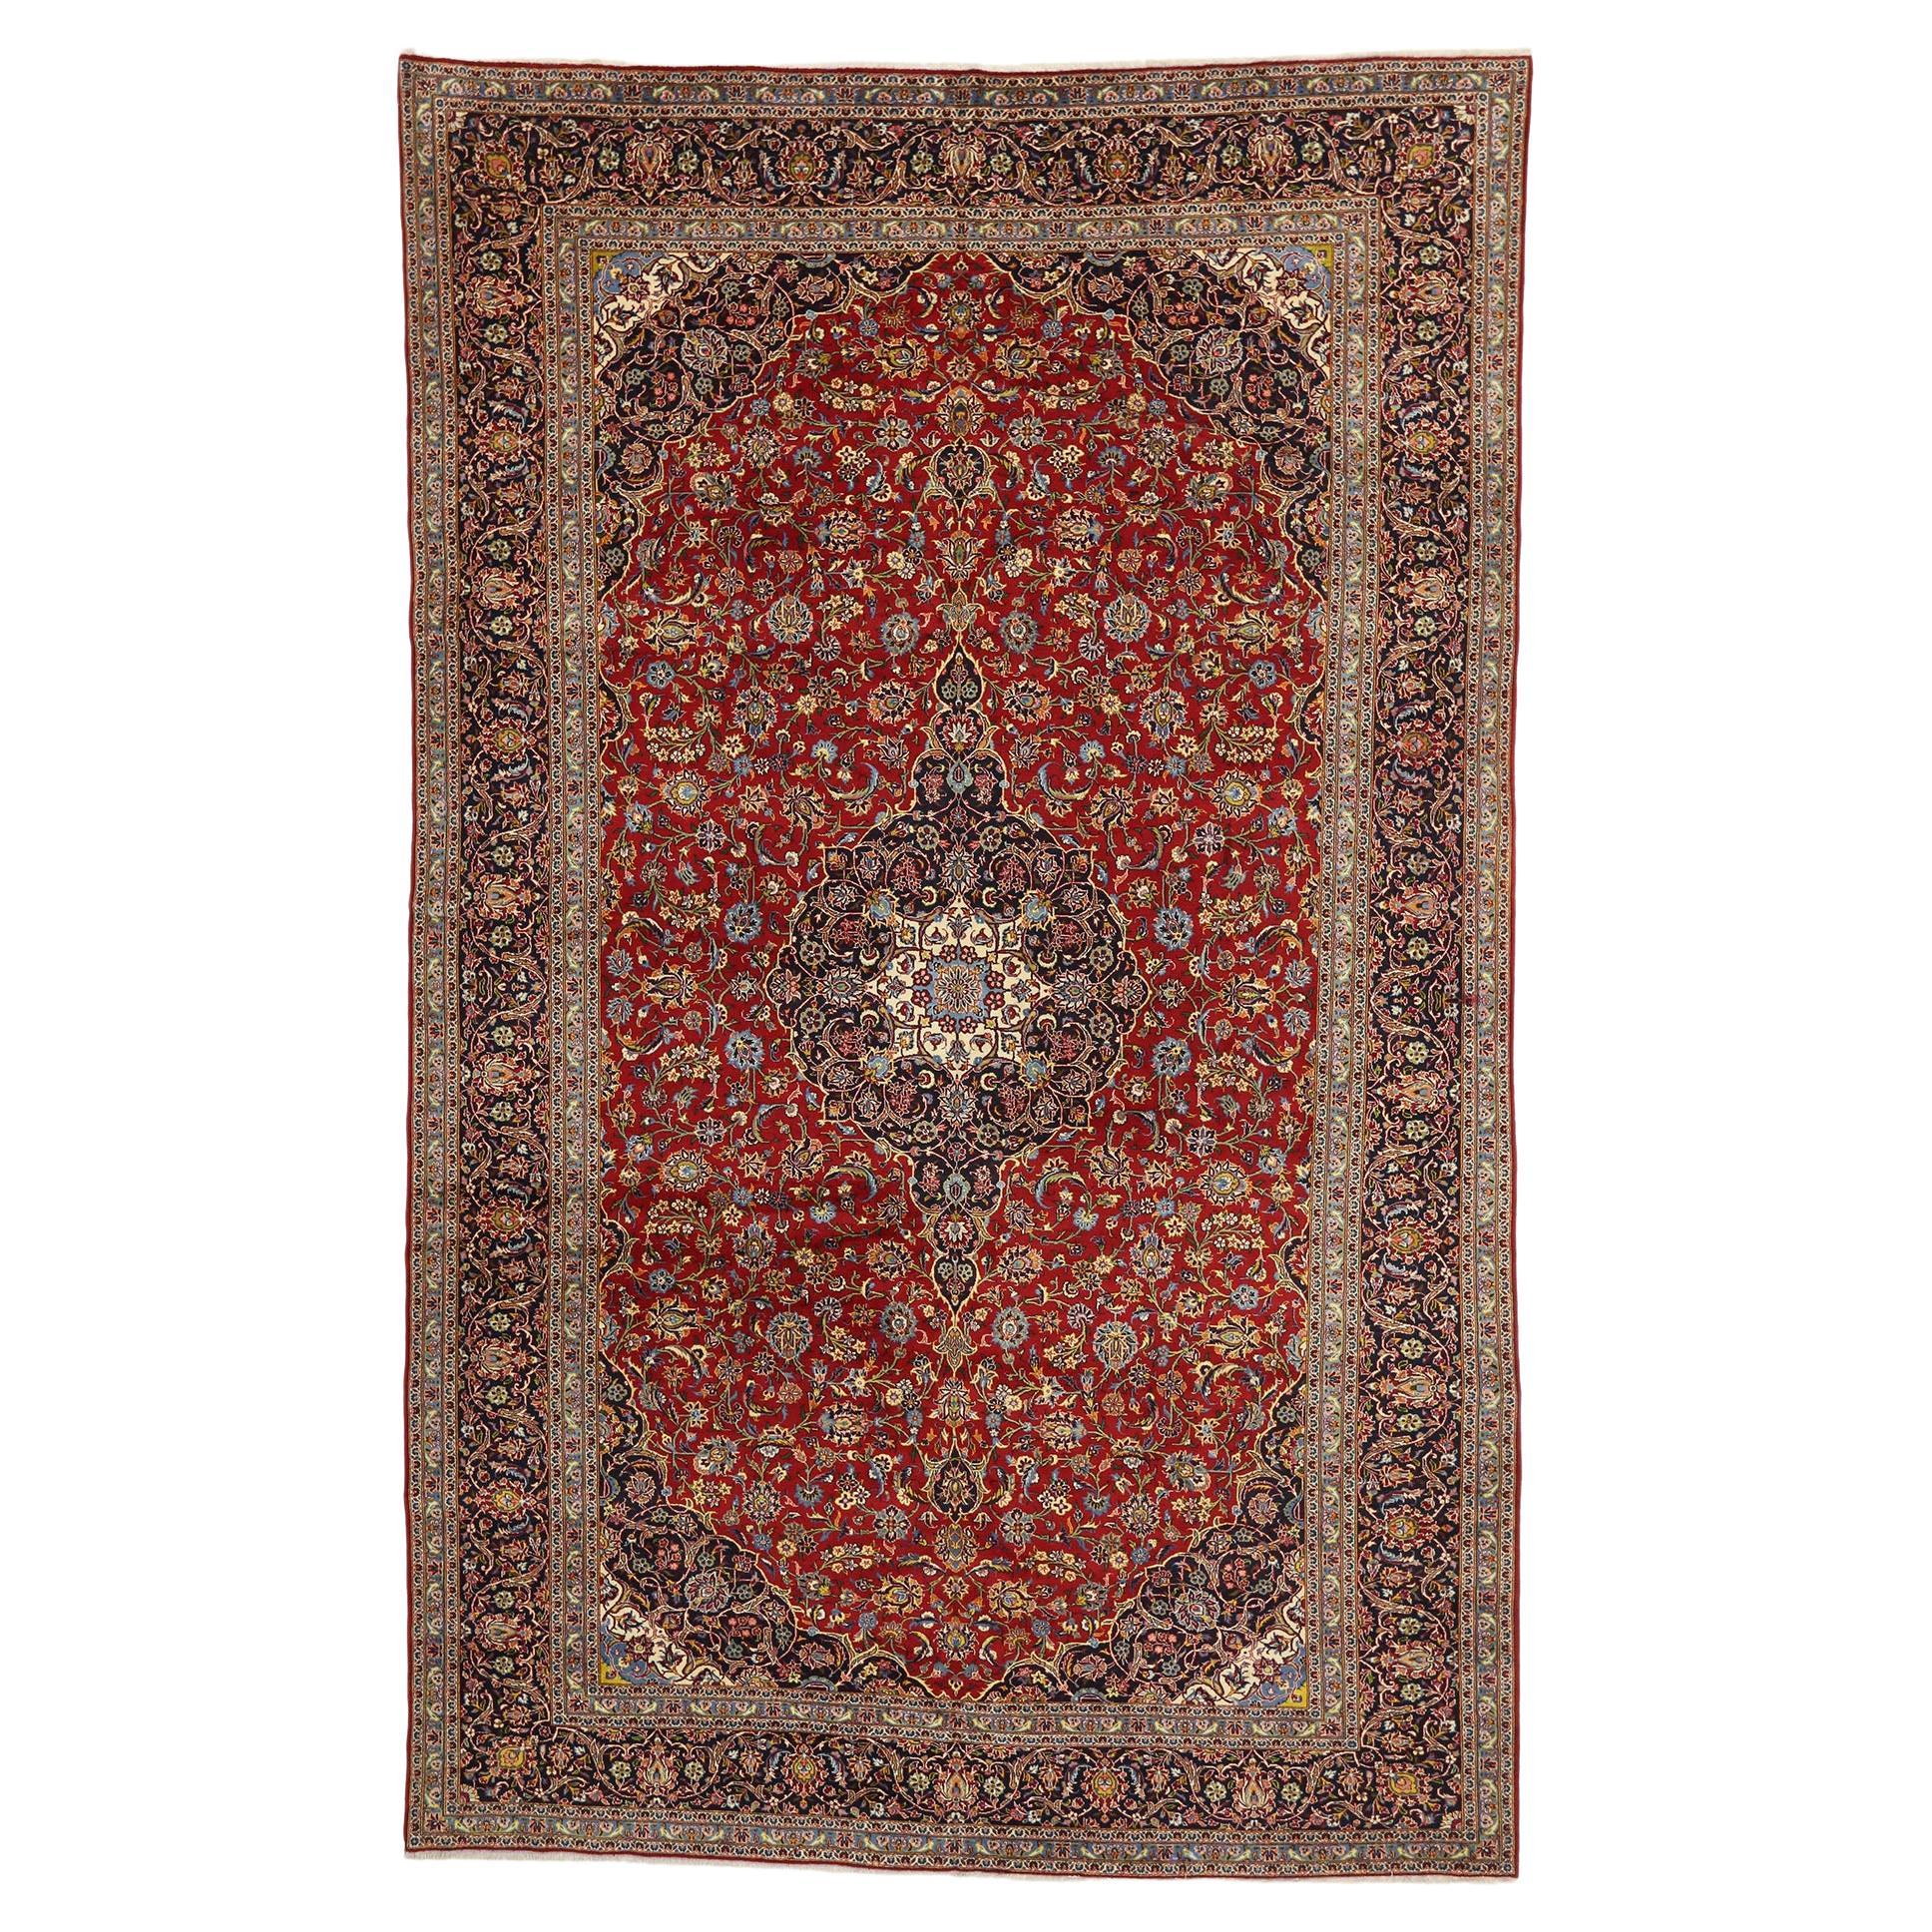 Persischer Kashan-Teppich im Vintage-Stil, Traditional Sensibilität trifft auf Stately Decadence